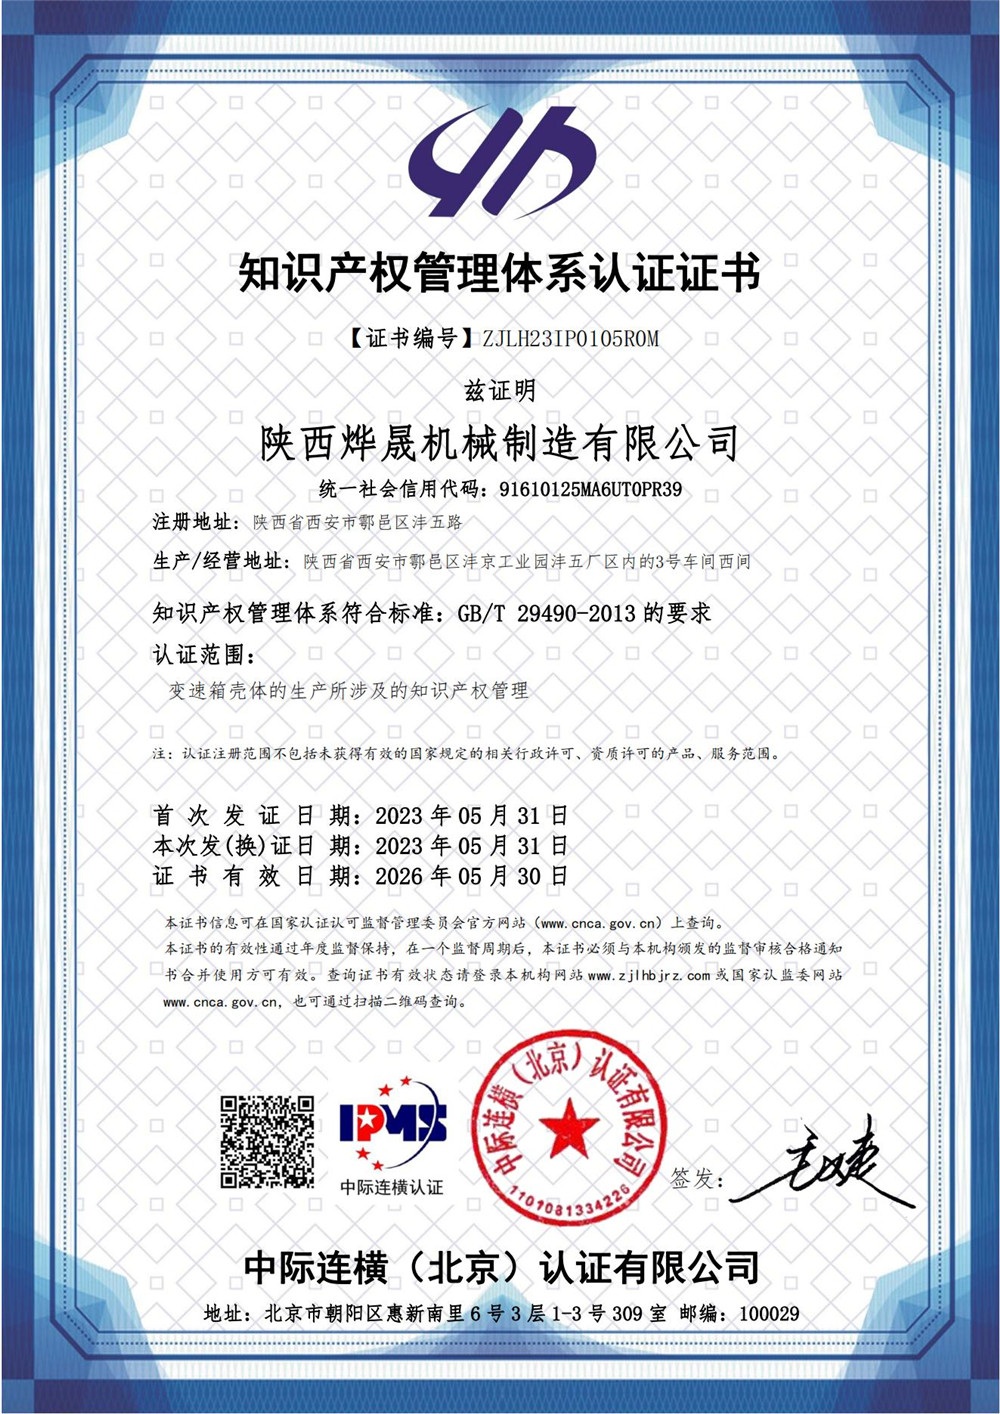 知识产权管理体系证书  IPMS证书中文_00.jpg